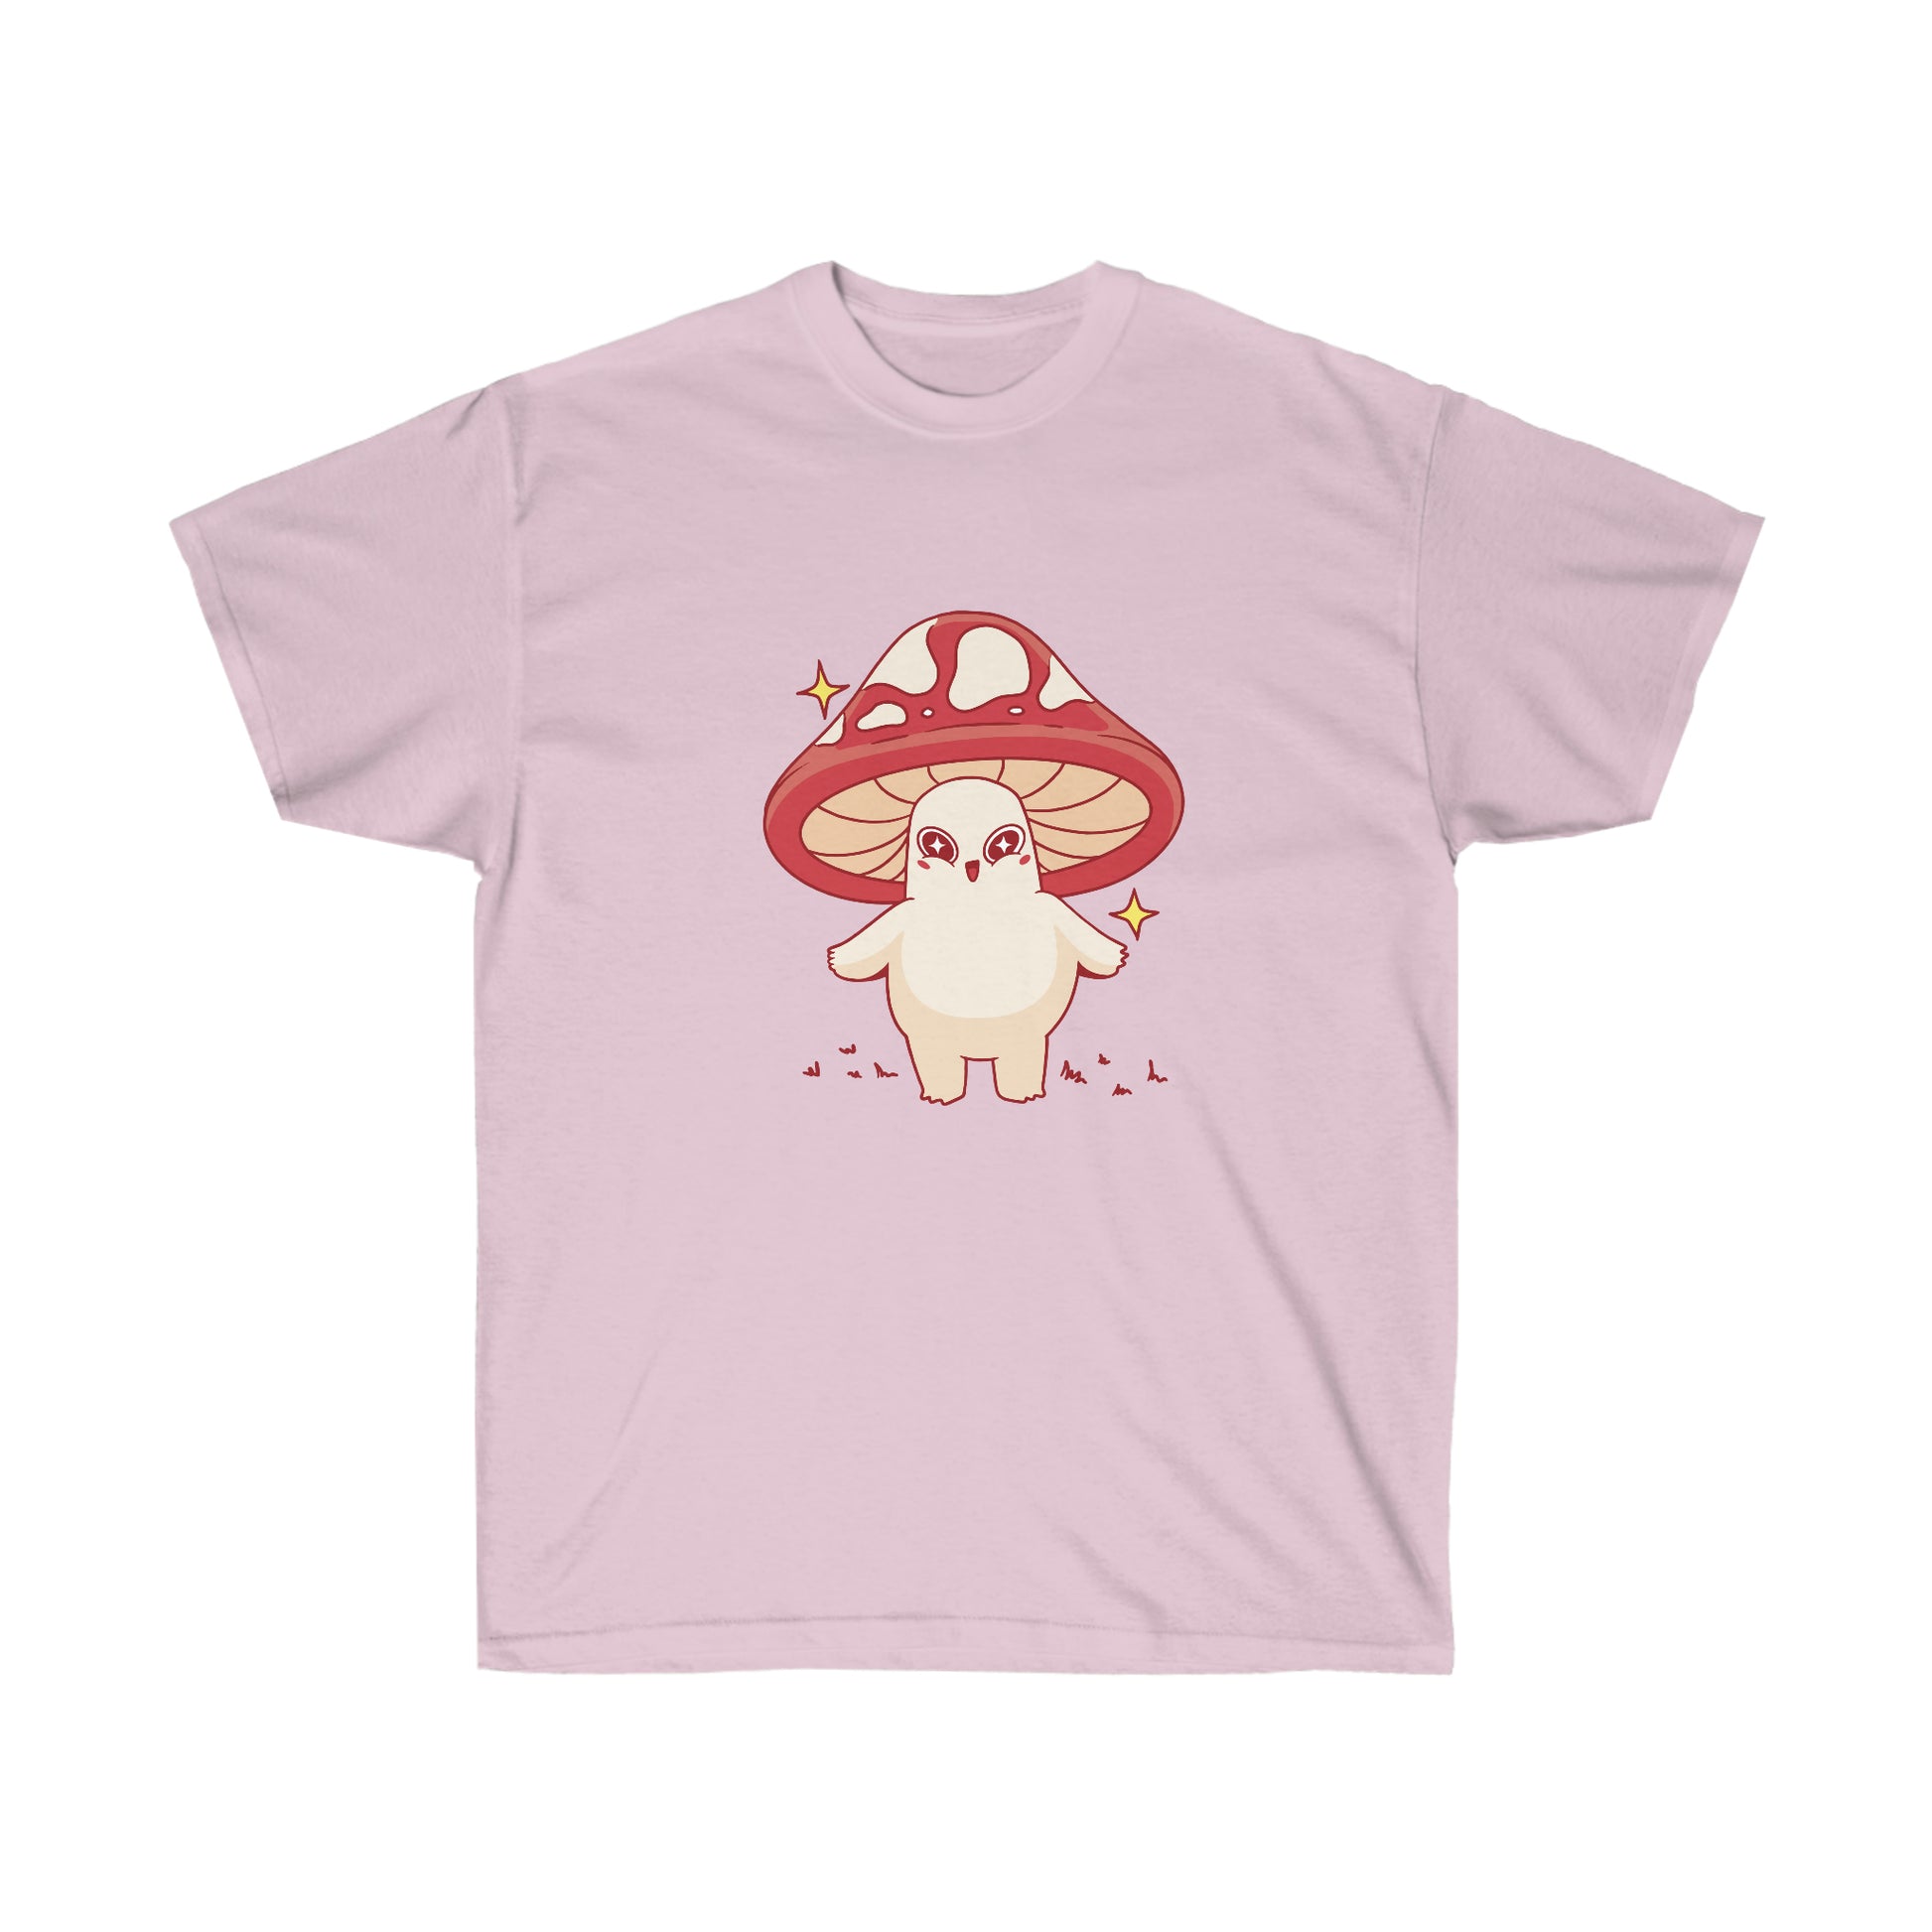 Kawaii Sweatshirt, Kawaii Clothing, Kawaii Clothes, Yami Kawaii Aesthetic, Pastel Kawaii Cute Mushroom Sweatshirt T-Shirt